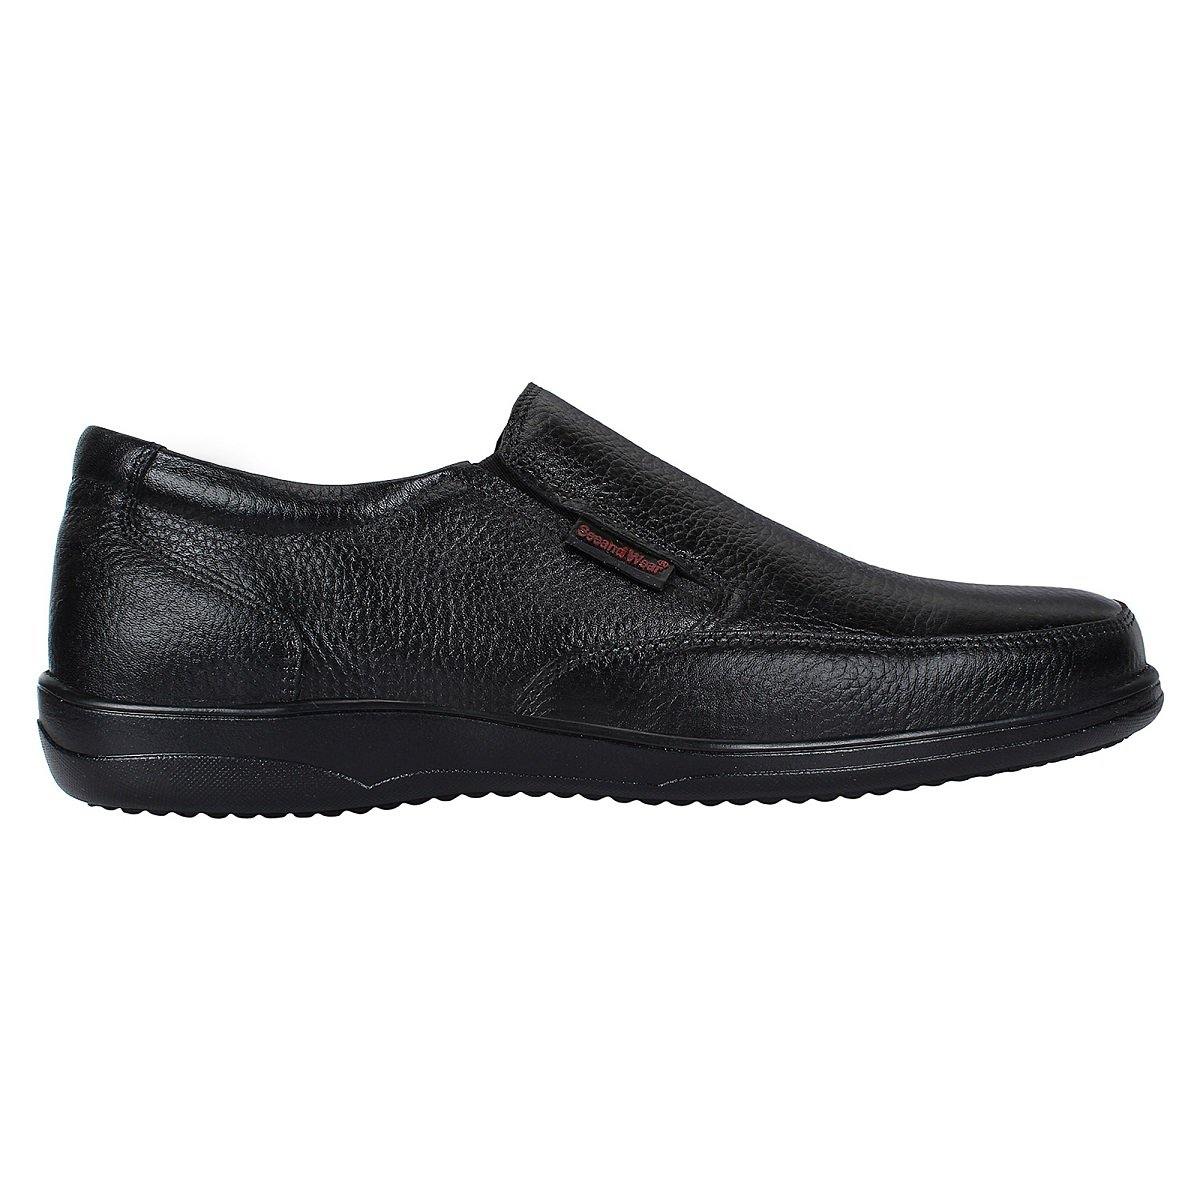 SeeandWear Formal Shoes for Men -Minor Defect - SeeandWear